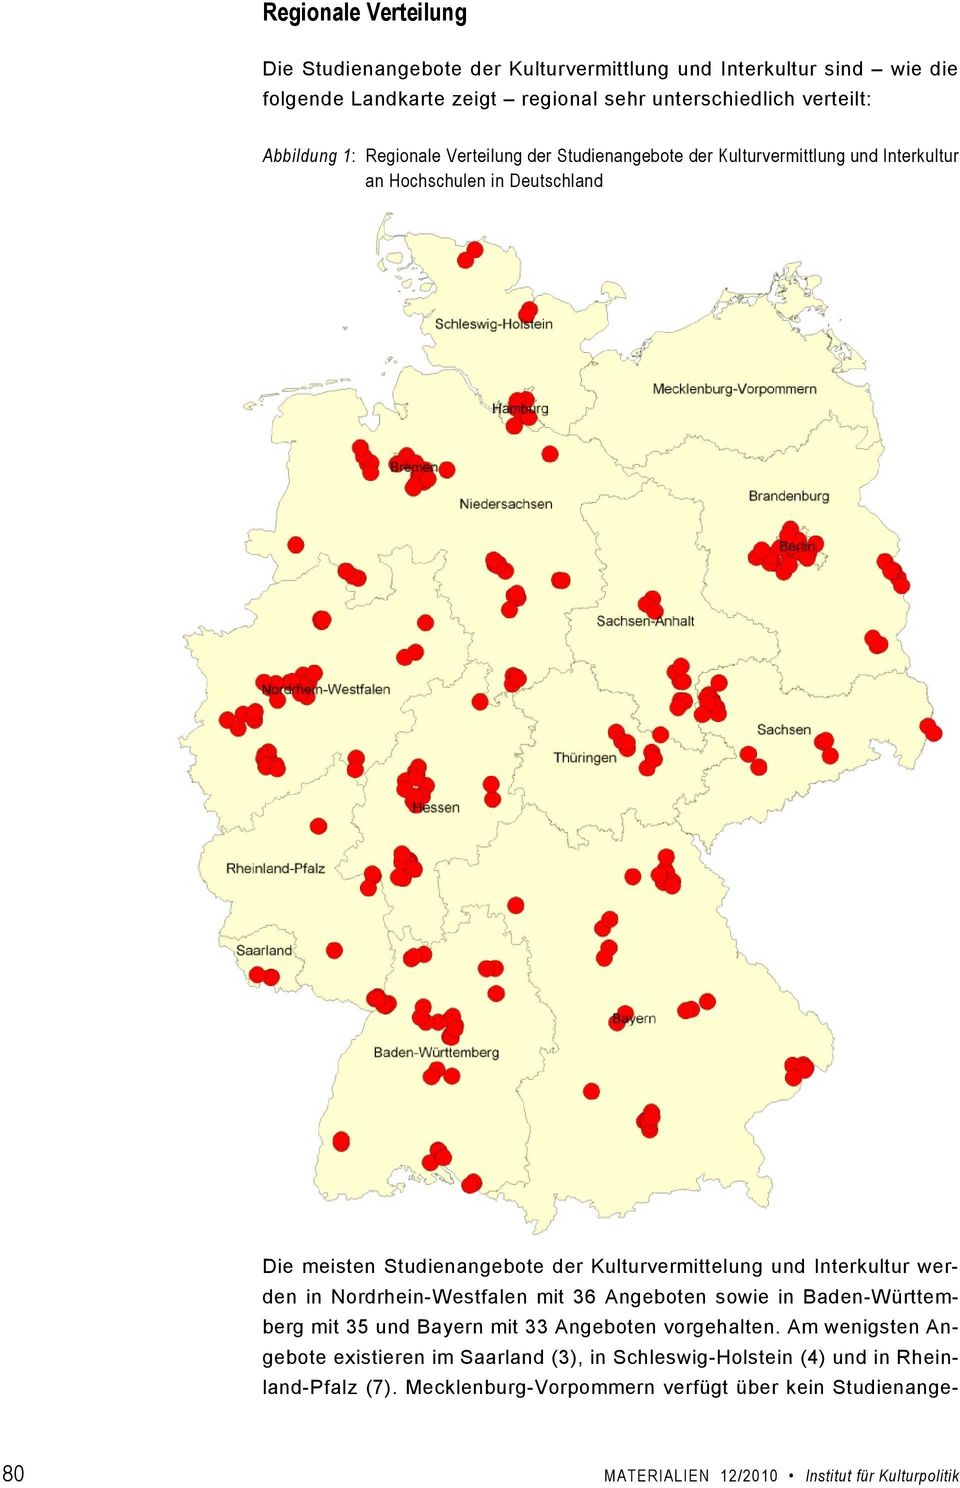 Interkultur werden in Nordrhein-Westfalen mit 36 Angeboten sowie in Baden-Württemberg mit 35 und Bayern mit 33 Angeboten vorgehalten.